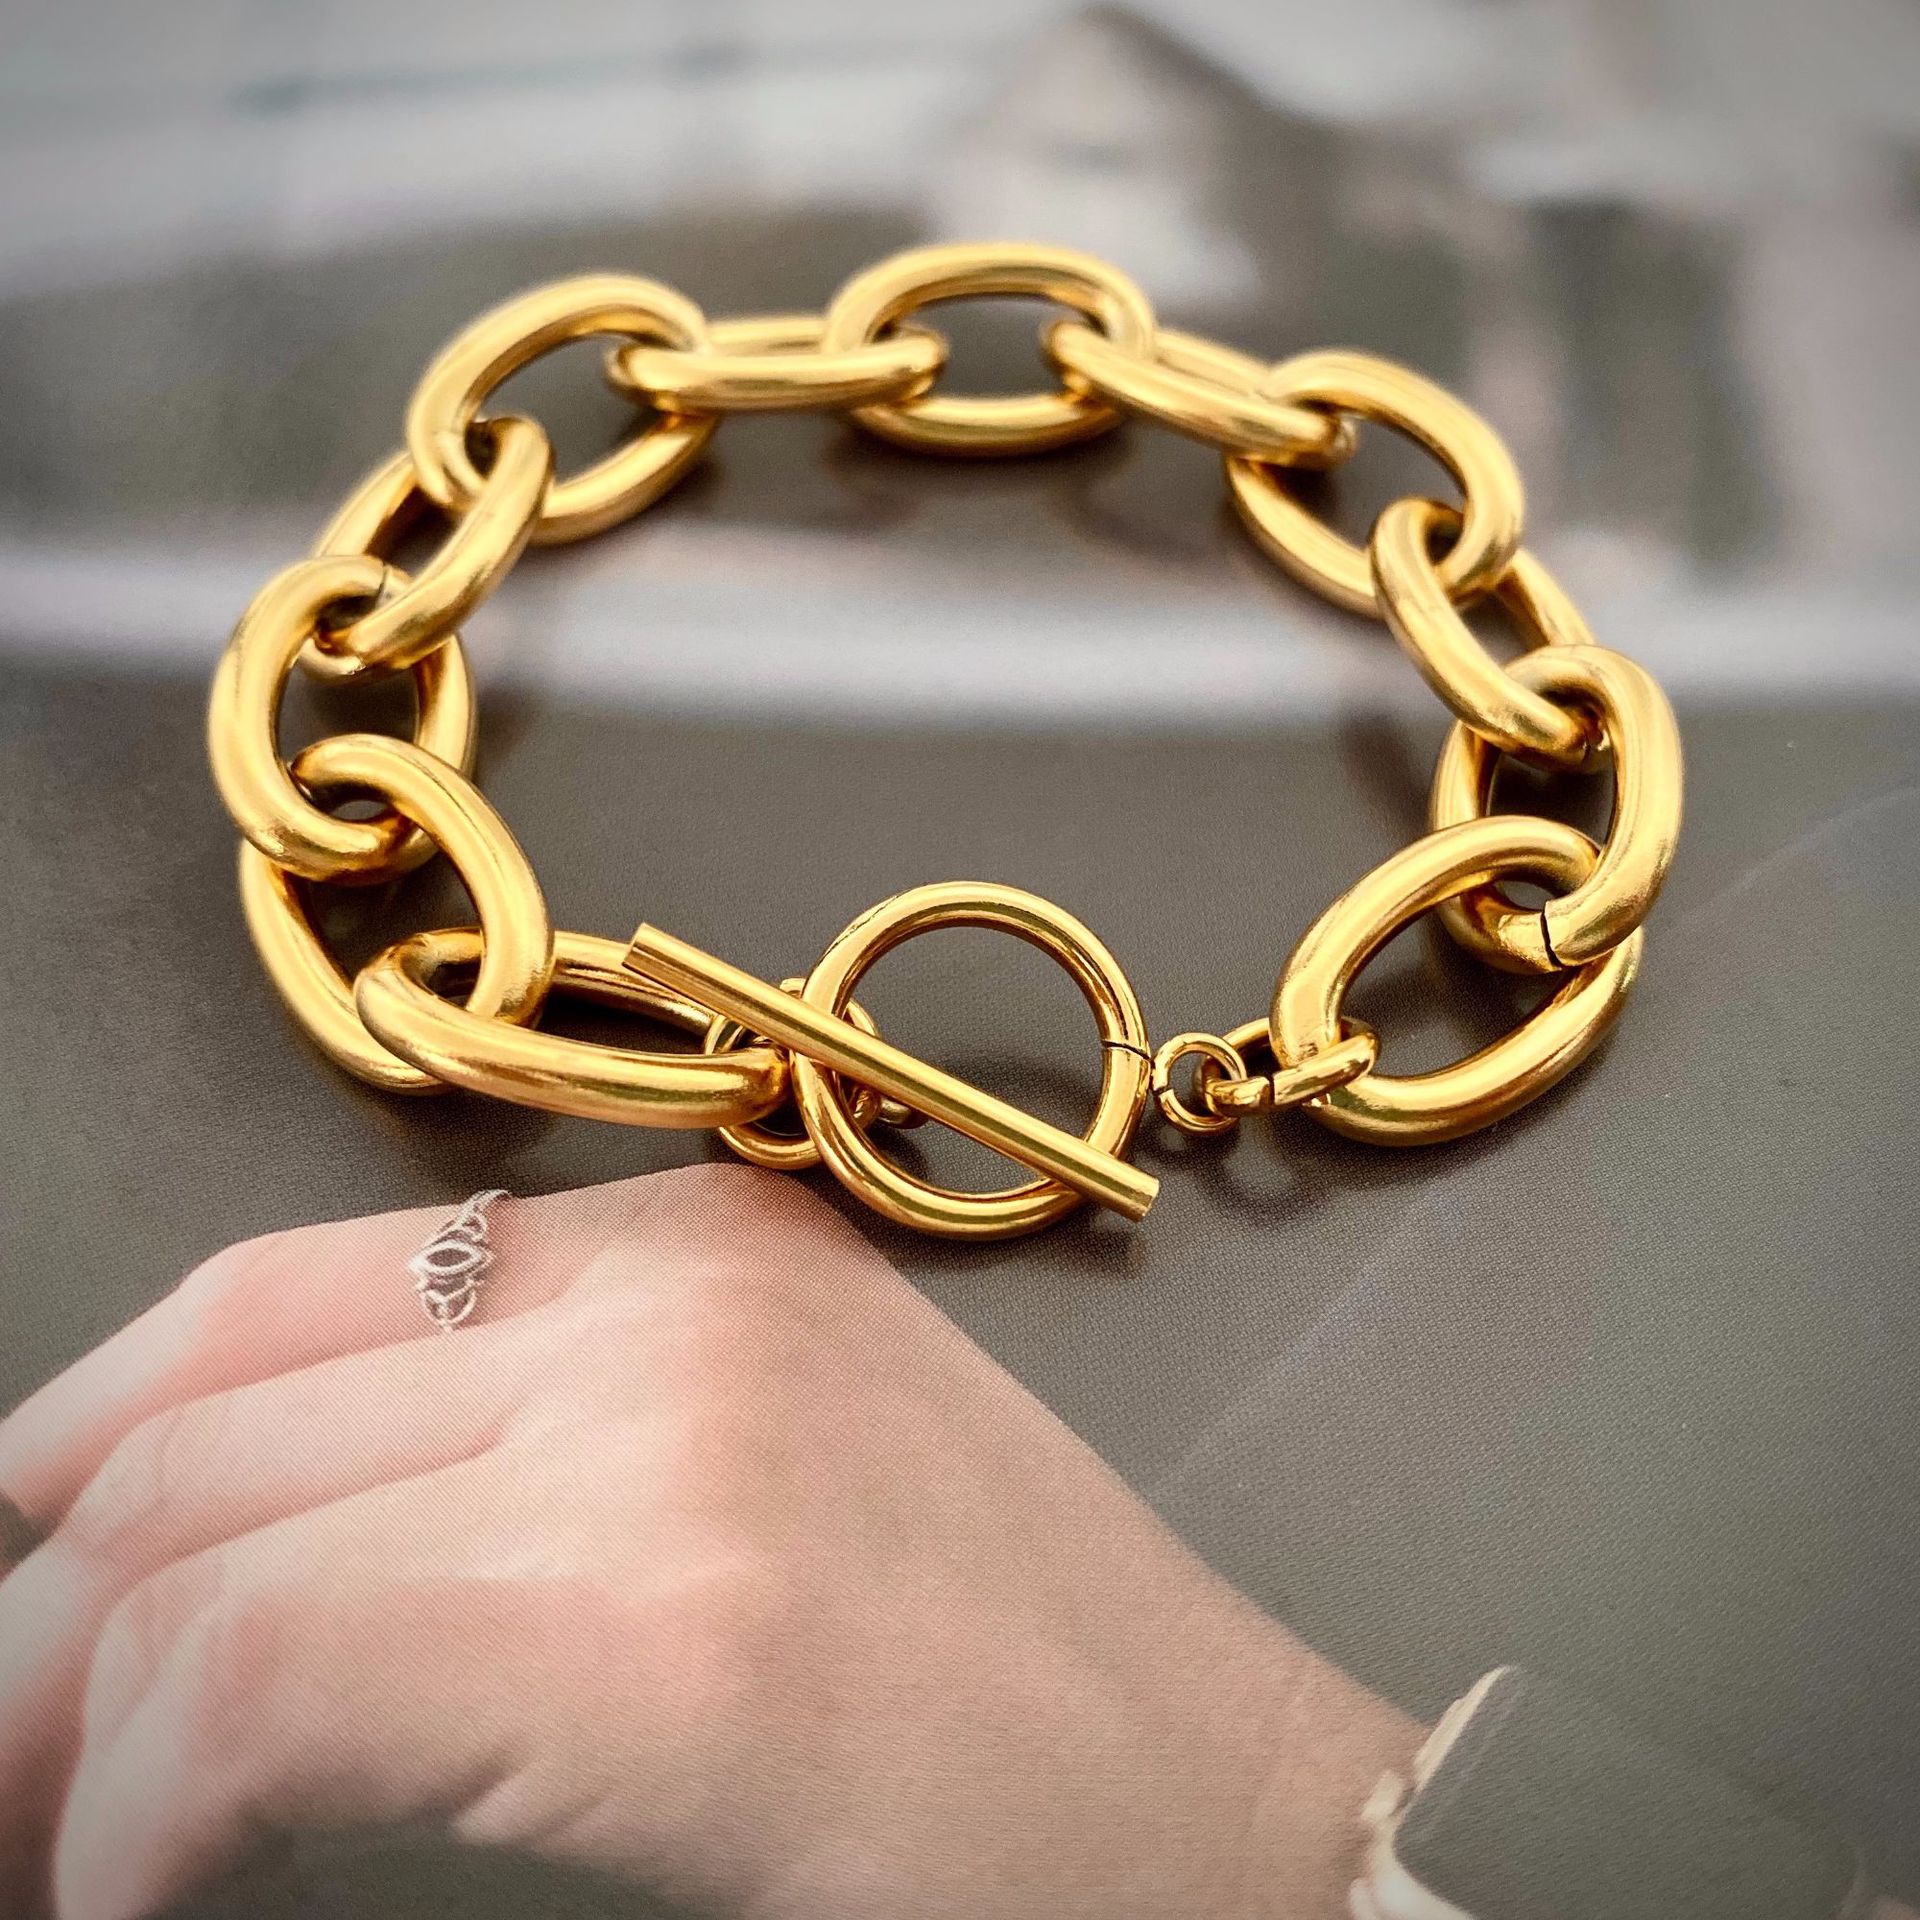 J. Hangke Rustless Roestvrij Staal Armband Voor Vrouwen Werken Partijen Fashiona Accessoires Gouden Sieraden Ketting Armbanden Choker